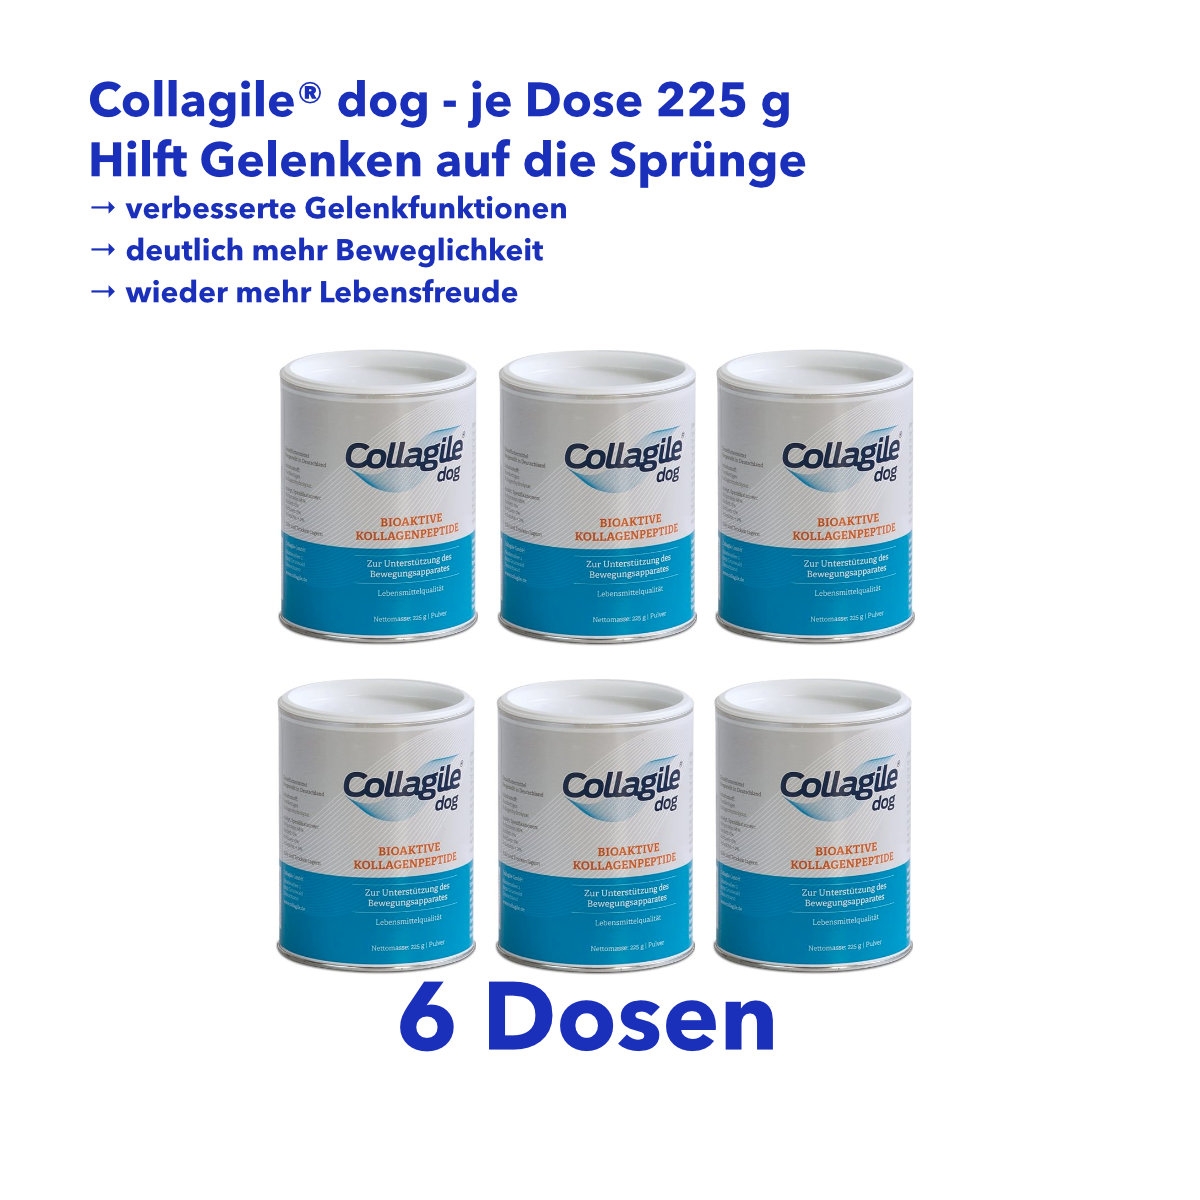 6er Set Collagile Dog - Bioaktive Kollagenpeptide